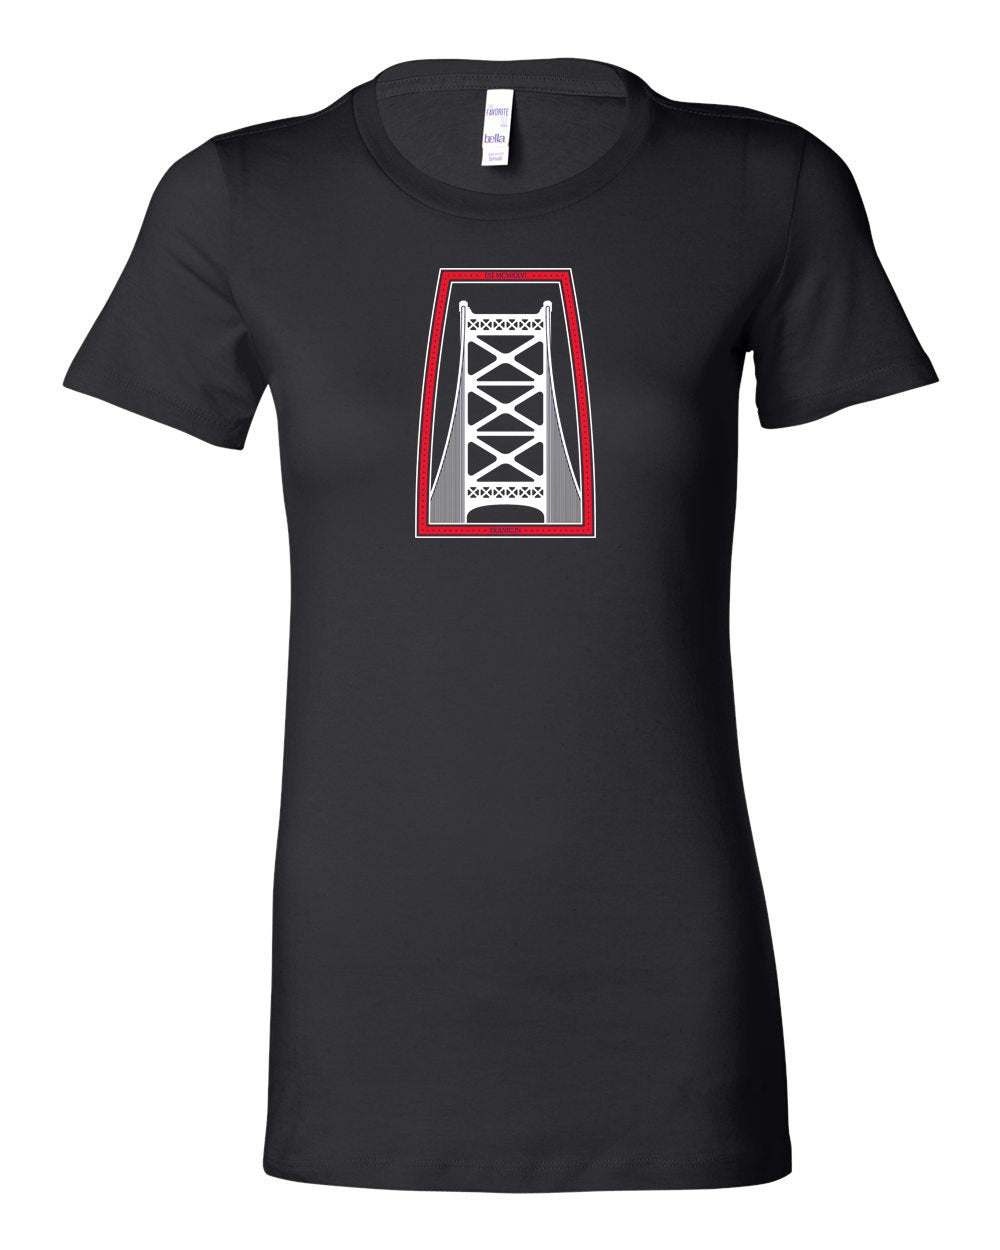 Ben Franklin Bridge Red & White Ink LADIES Junior-Fit T-Shirt